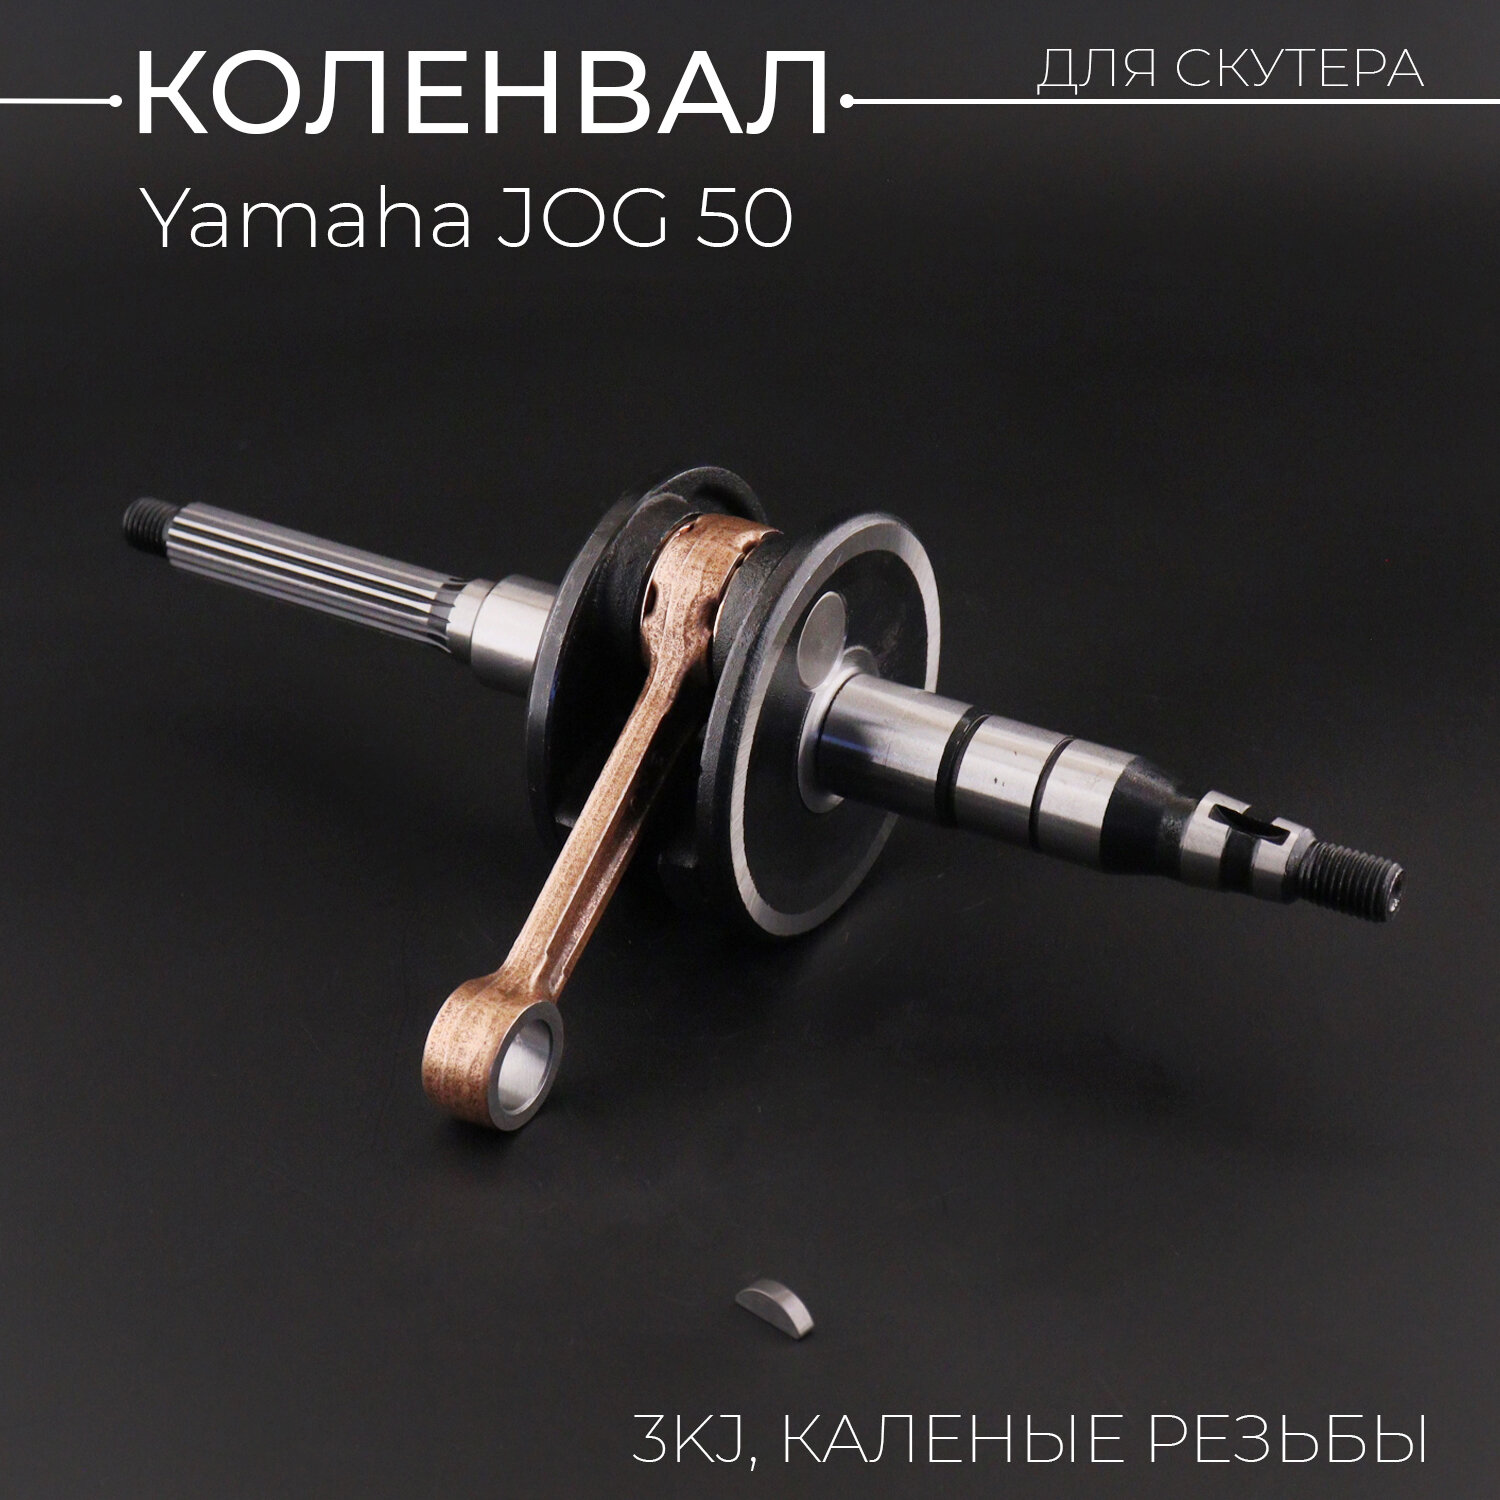 Коленвал Yamaha JOG 50 (3KJ) (каленые резьбы, +сепаратор) "KOMATCU"